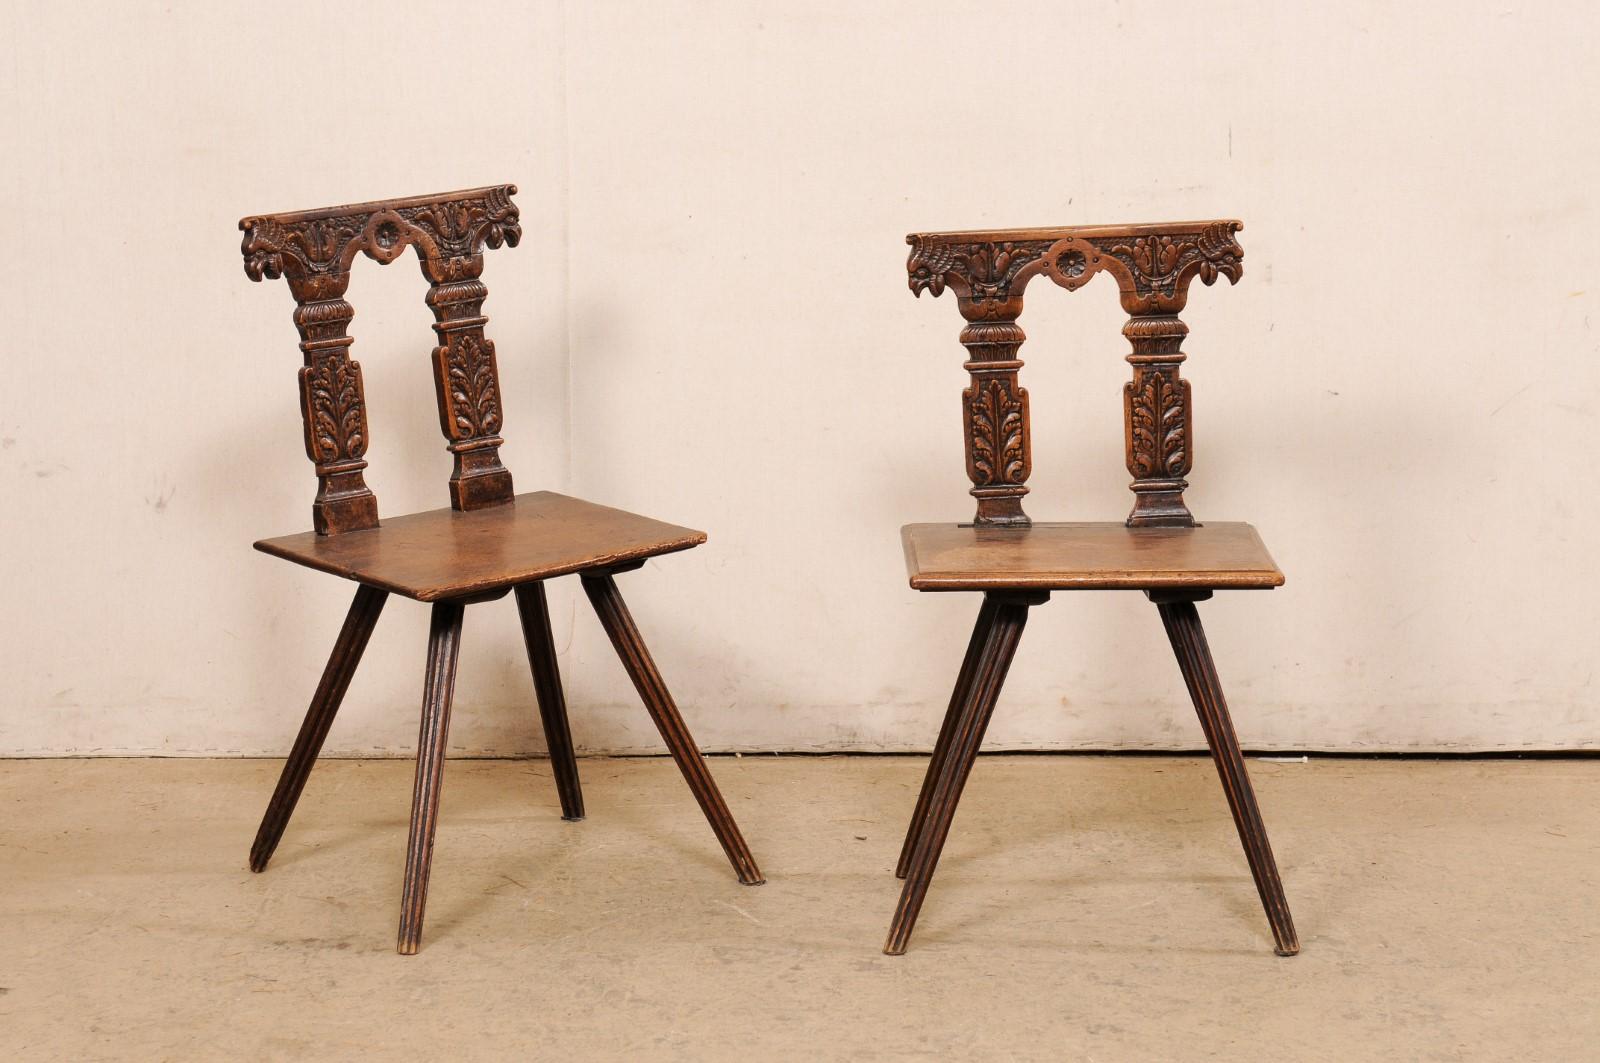 Ein europäisches Paar geschnitzter Holzstühle aus dem 19. Jahrhundert. Dieses antike Stuhlpaar aus Europa verfügt über eine stark verzierte Rückenlehne mit Reliefschnitzereien, die ein Paar verschnörkelte Säulen mit einem Blattmotiv und einem